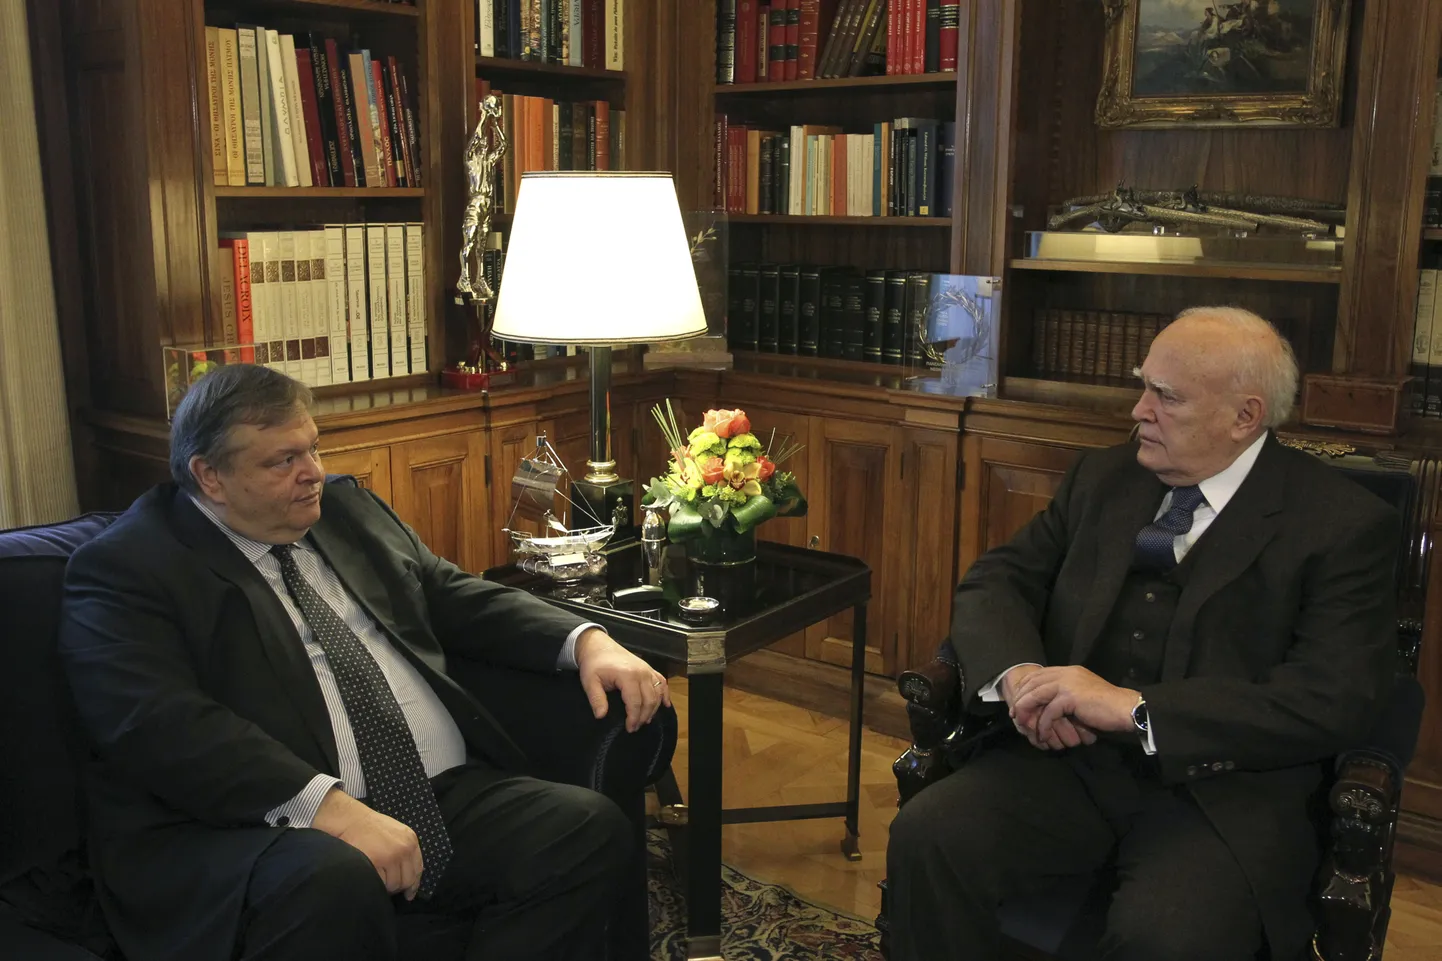 Kreeka rahandusminister Evangelos Venizelos (vasakul) ja Kreeka president Karolos Papoulias.